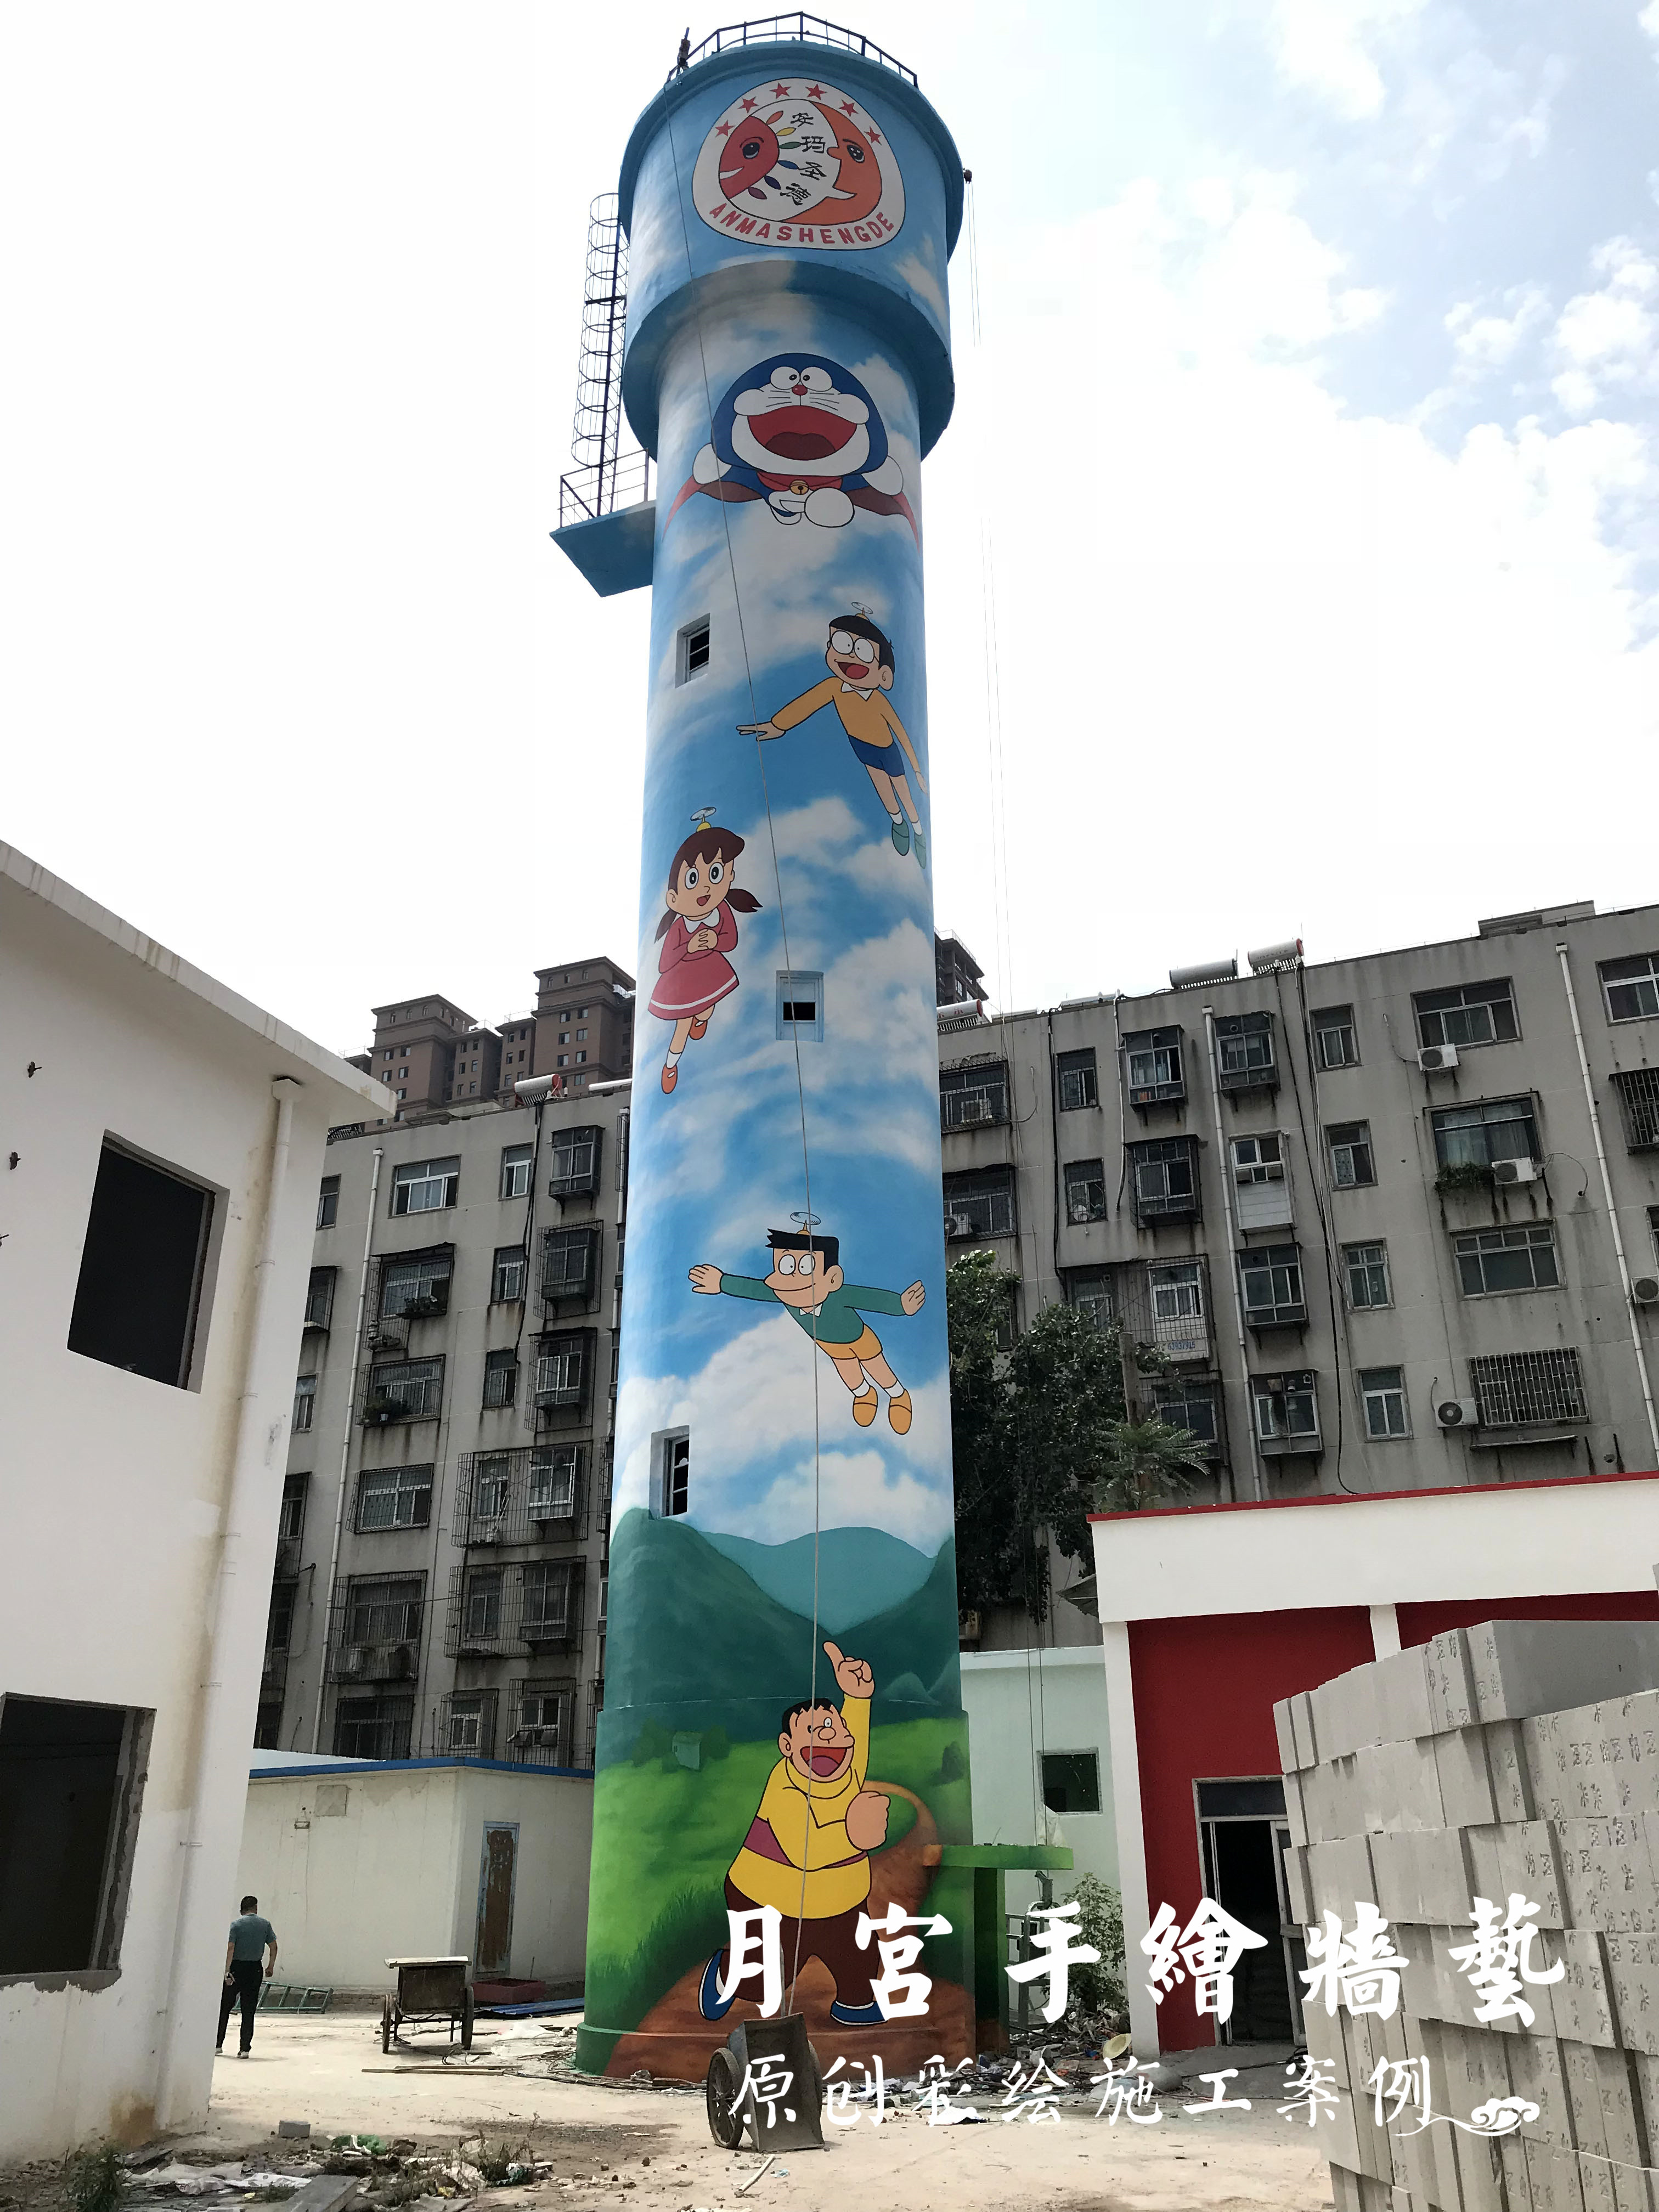 水塔彩绘—郑州安玛圣德幼儿园水塔机器猫主题彩绘